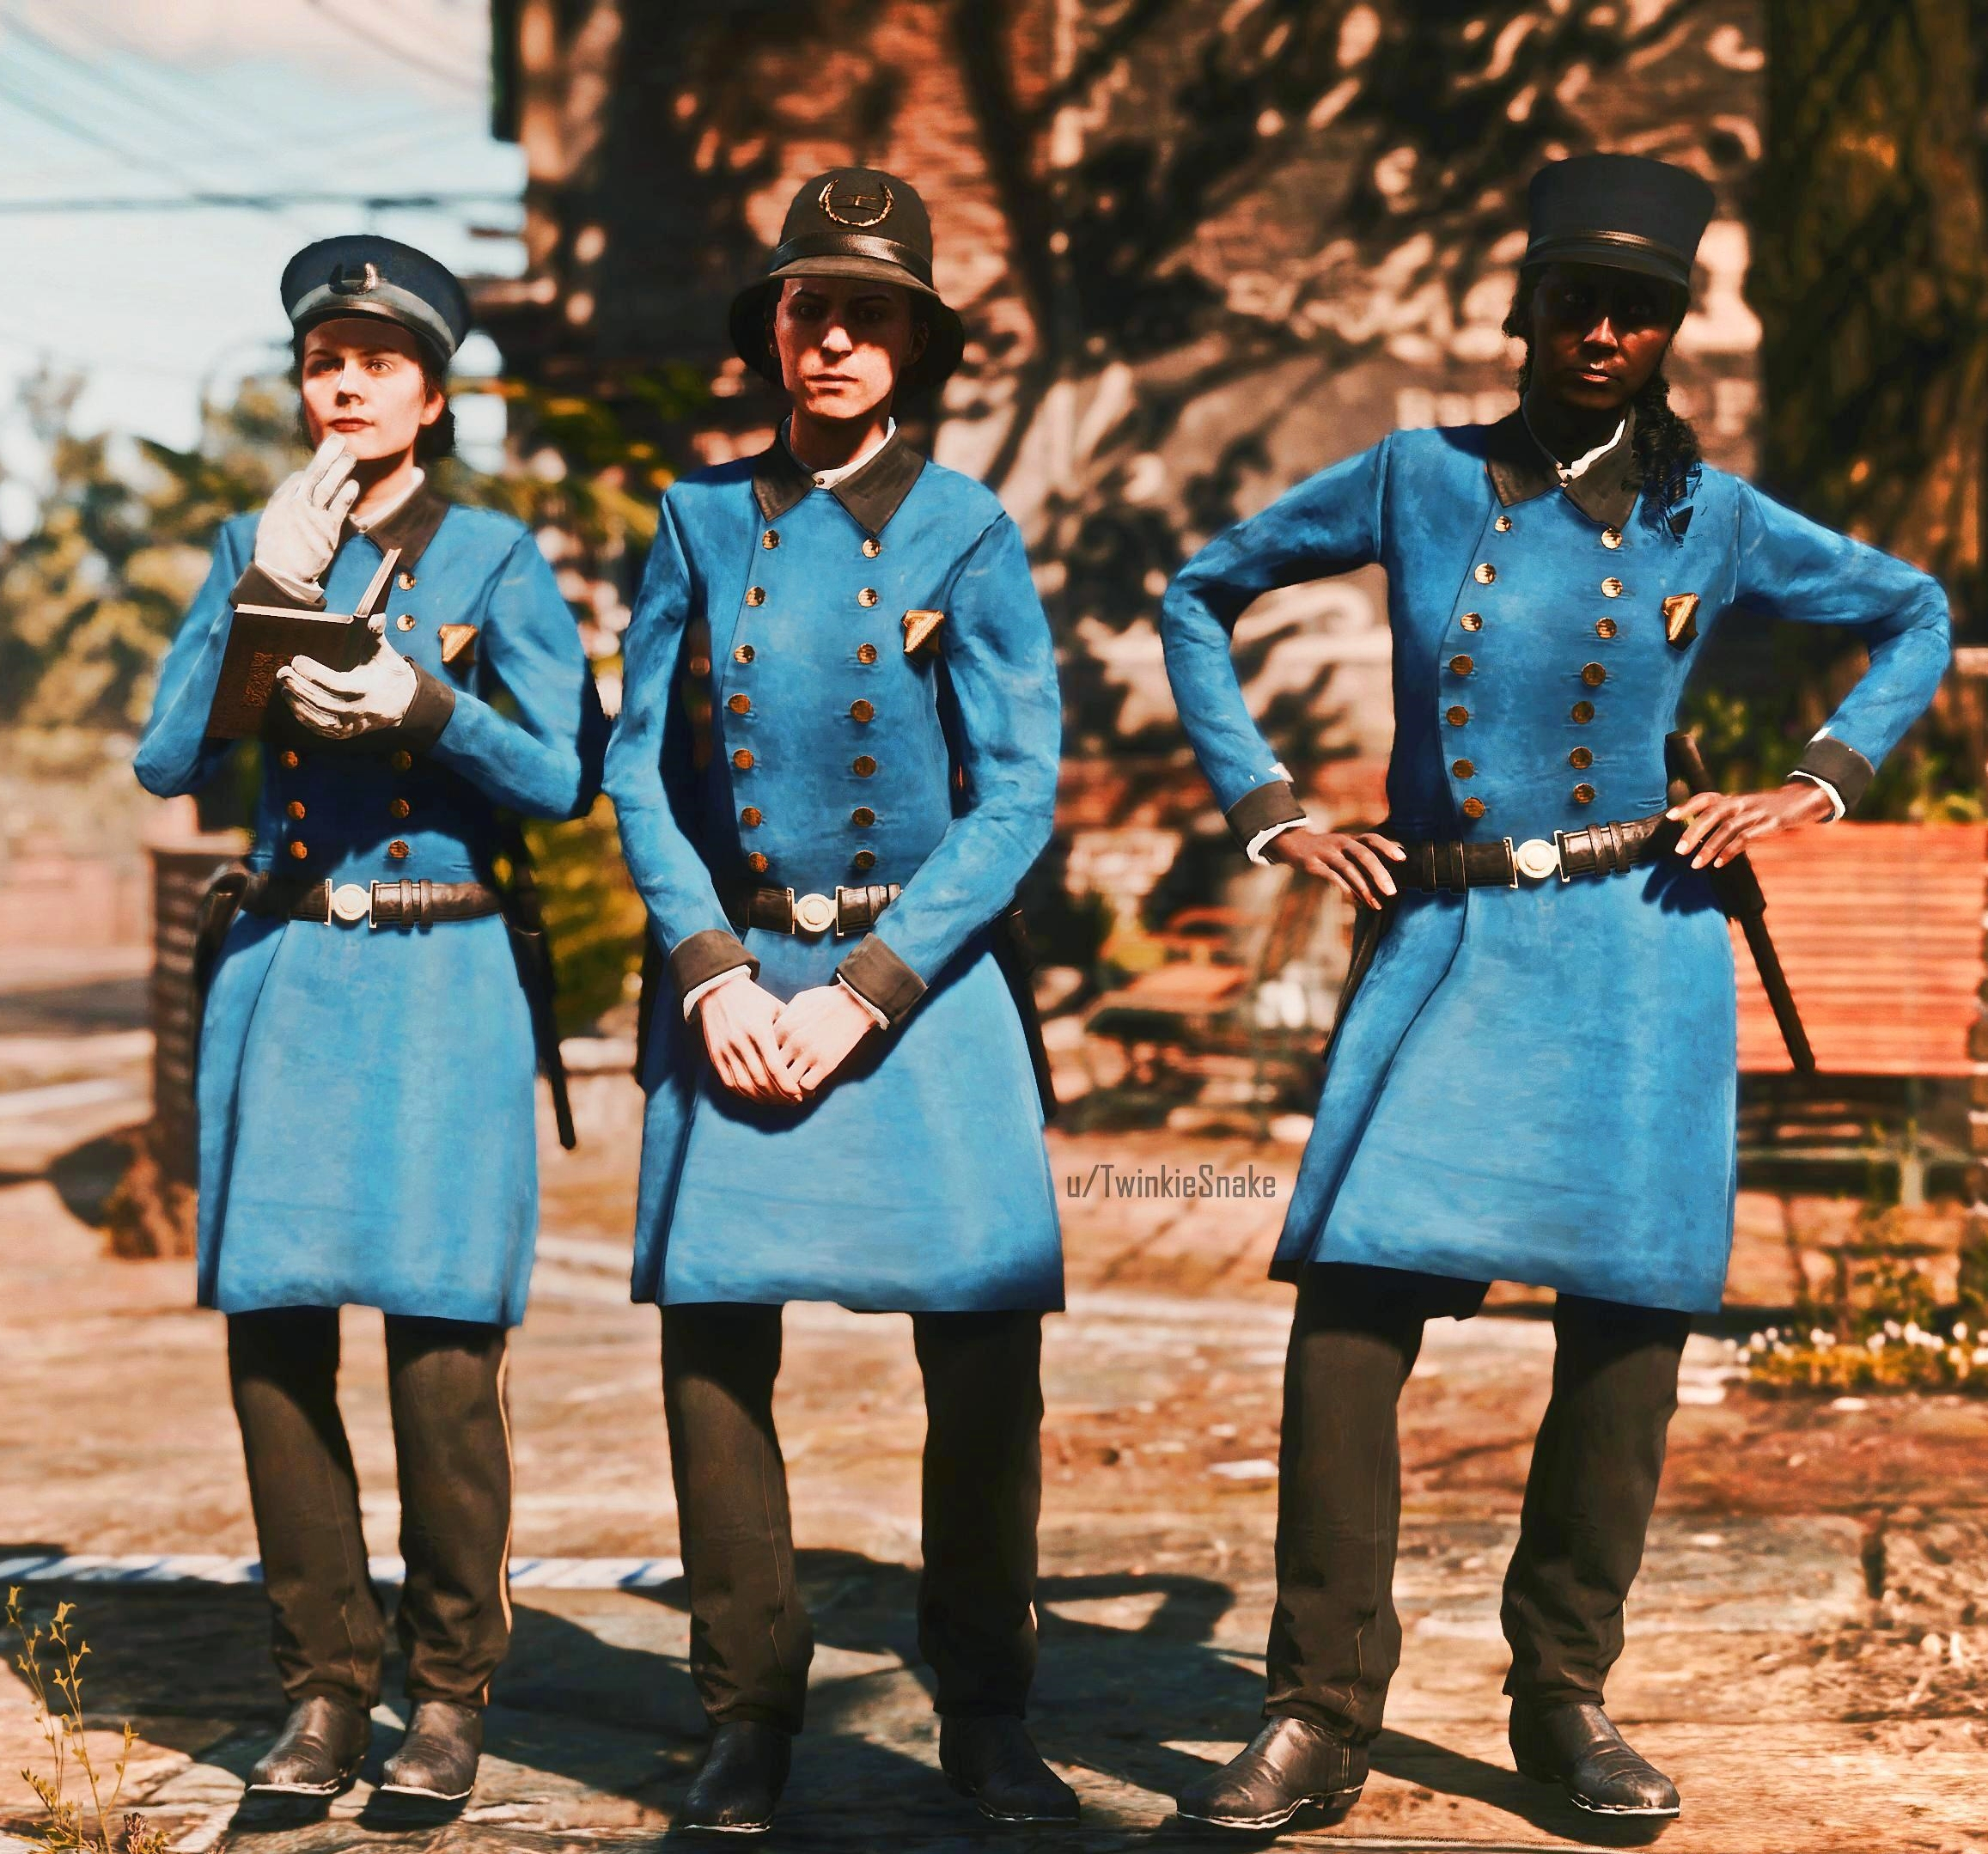 Суфражистки, ещё рано: в файлах Red Dead Redemption 2 нашли незаконченные модели женщин-полицейских из Сен-Дени